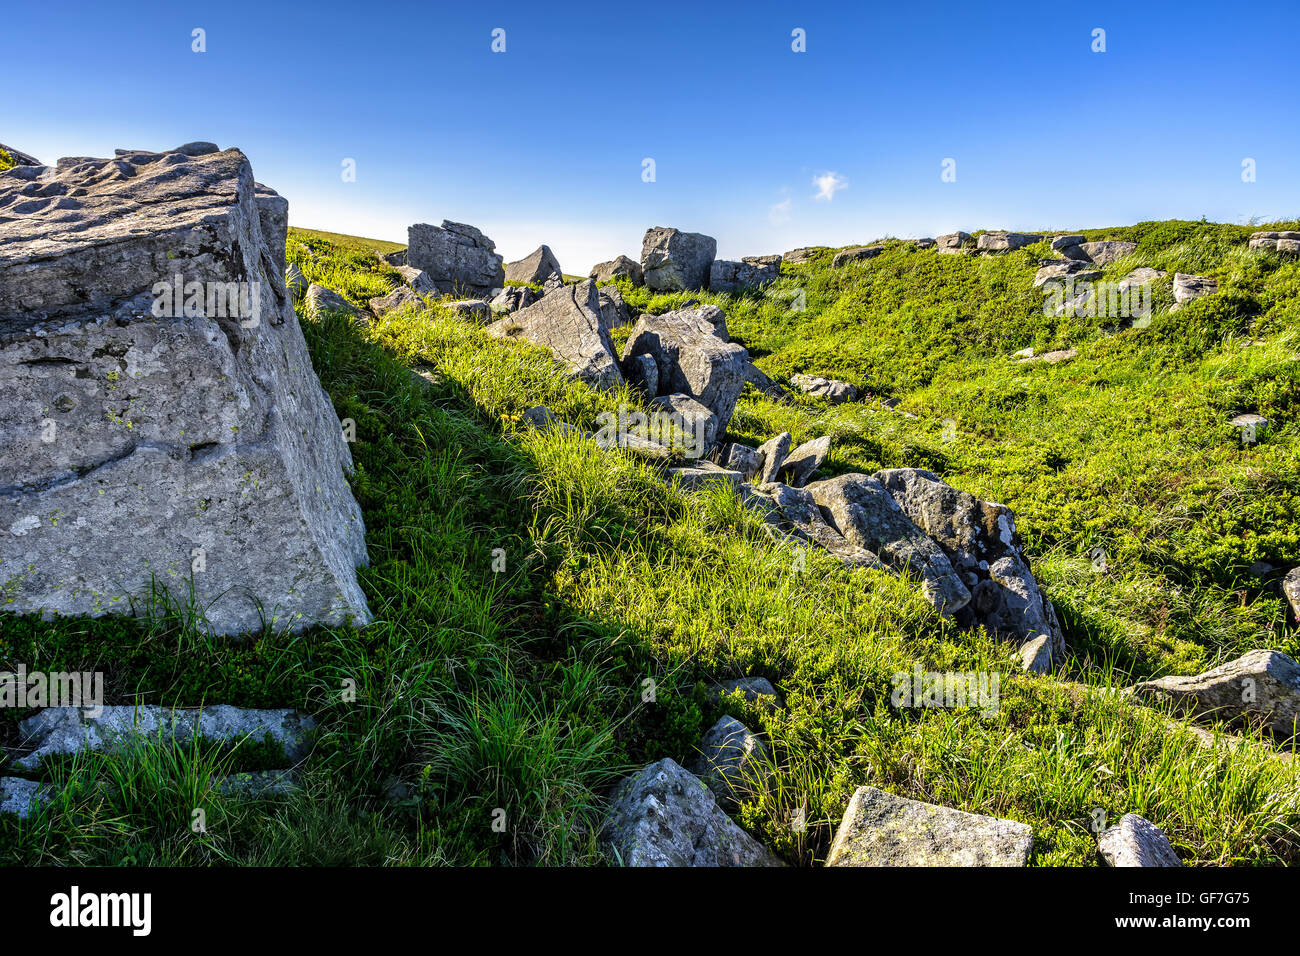 Berg-Sommer-Landschaft. Wiese mit großen Steinen unter dem Rasen oben auf dem Hügel nahe dem Gipfel des Gebirges in mor Stockfoto